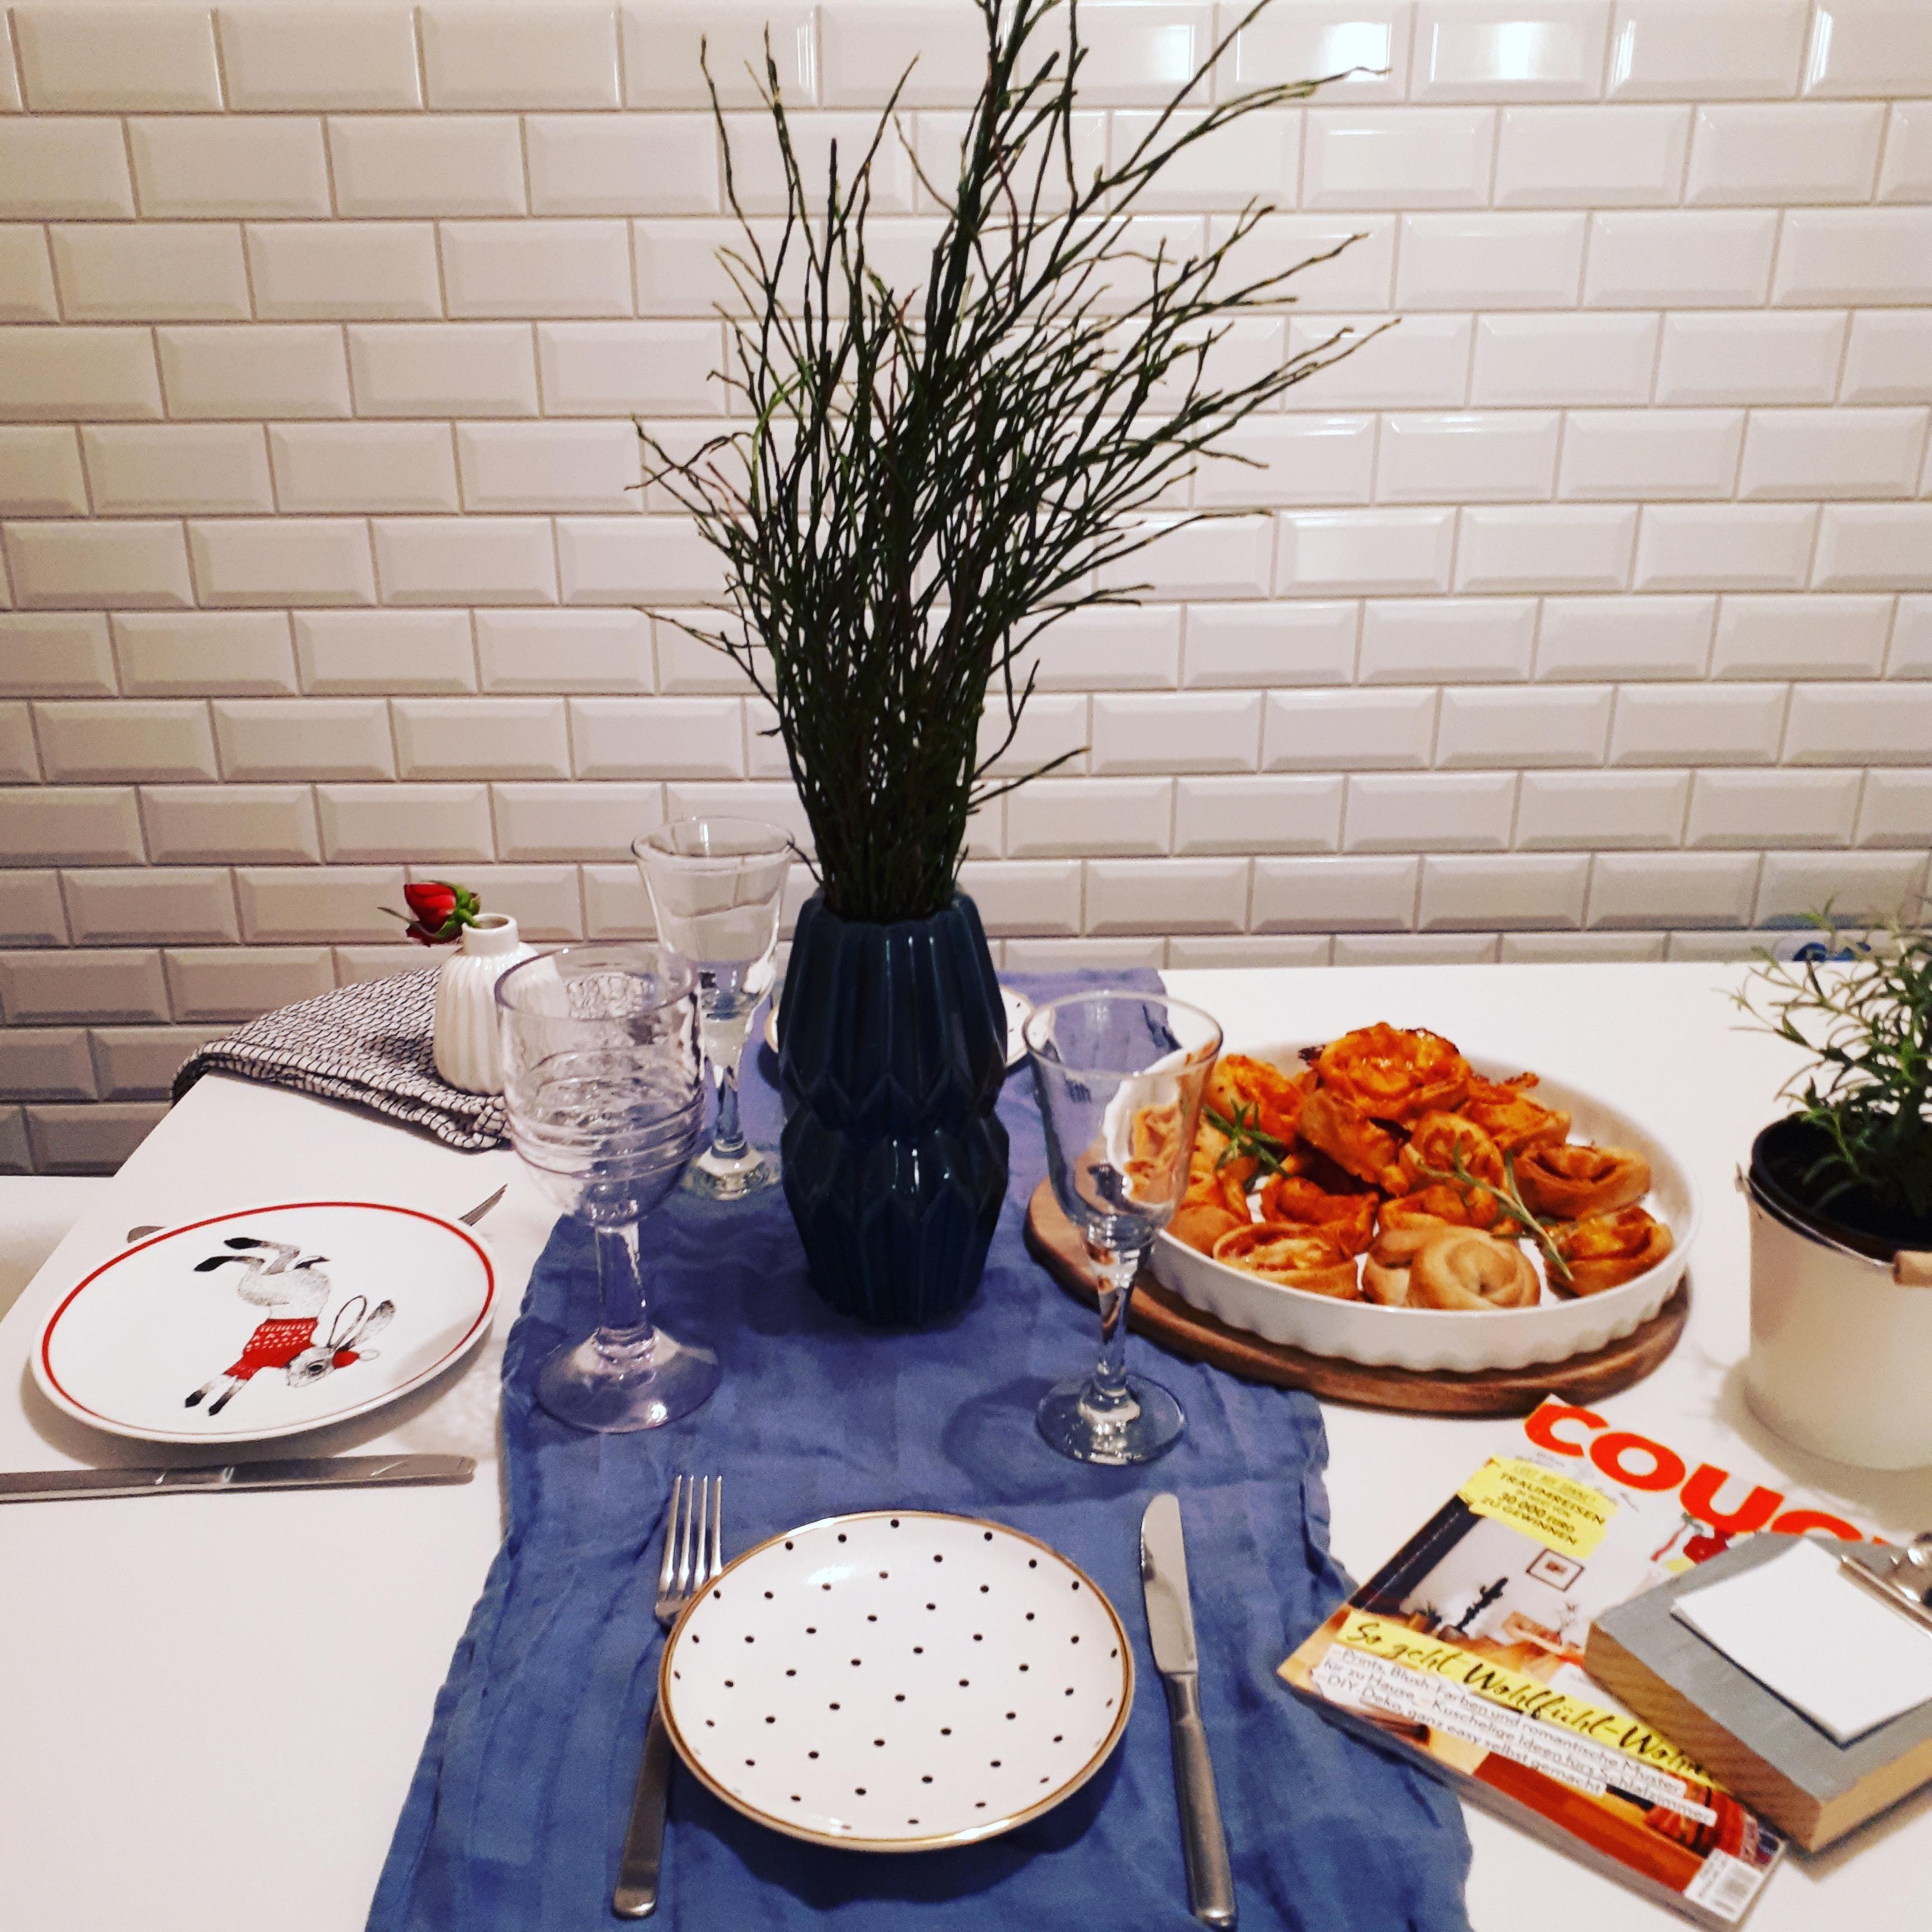 Ein gemütliches und einfaches #dinner 🍴
.
#Couch #Küche #Pizzaschnecken #Abendessen #gedeckterTisch #Pflanze 